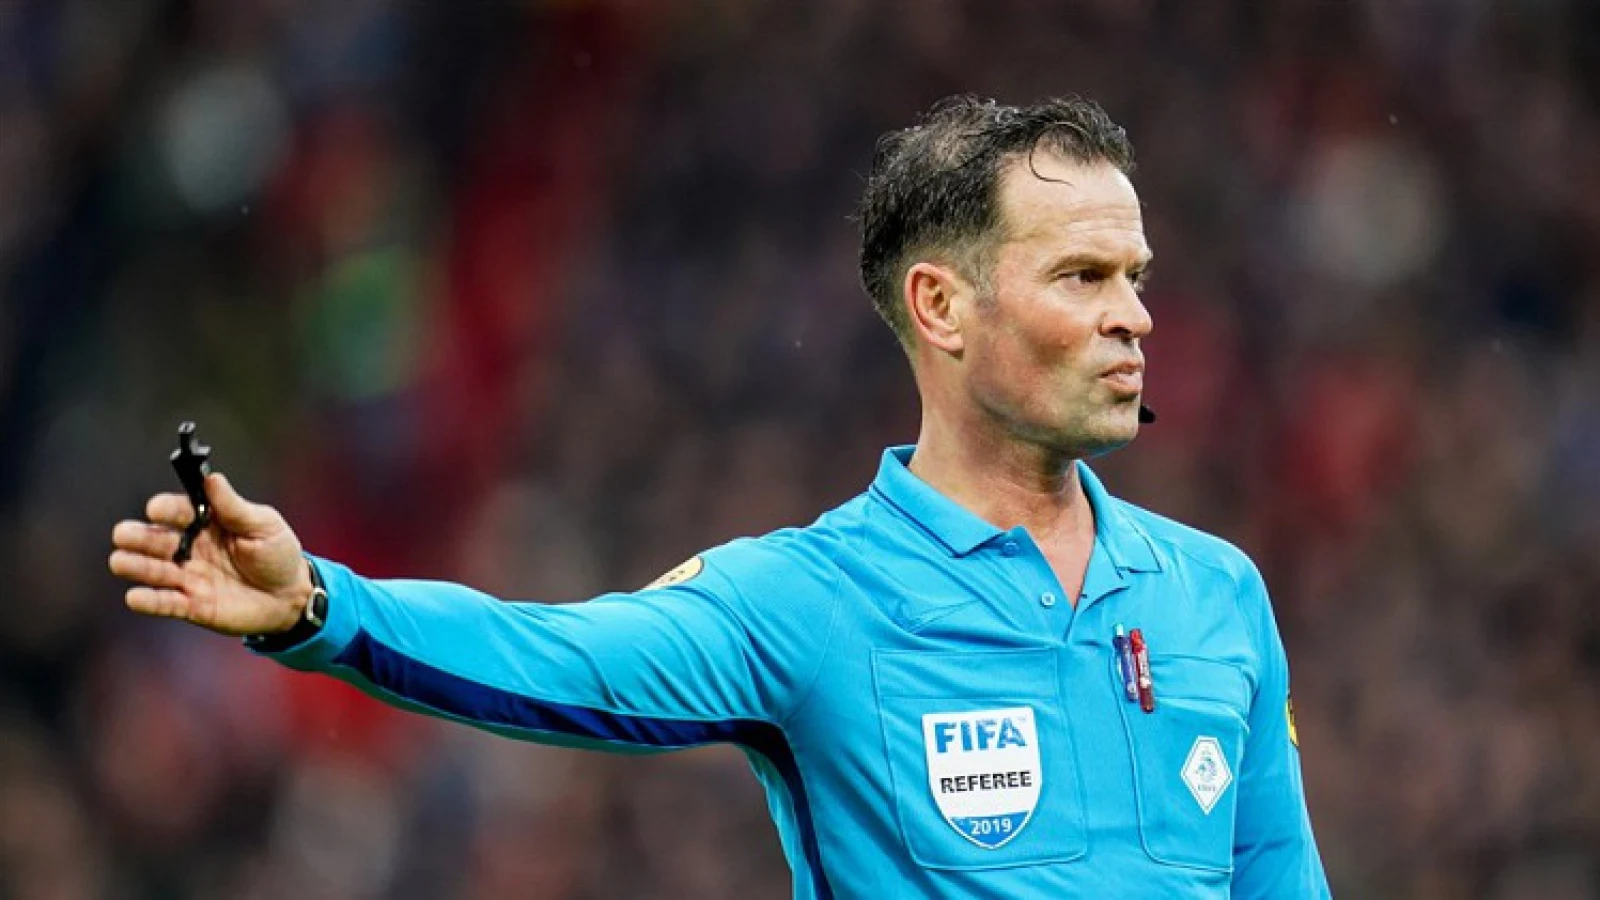 Bas Nijhuis scheidsrechter tijdens wedstrijd tussen Feyenoord en Fortuna Sittard